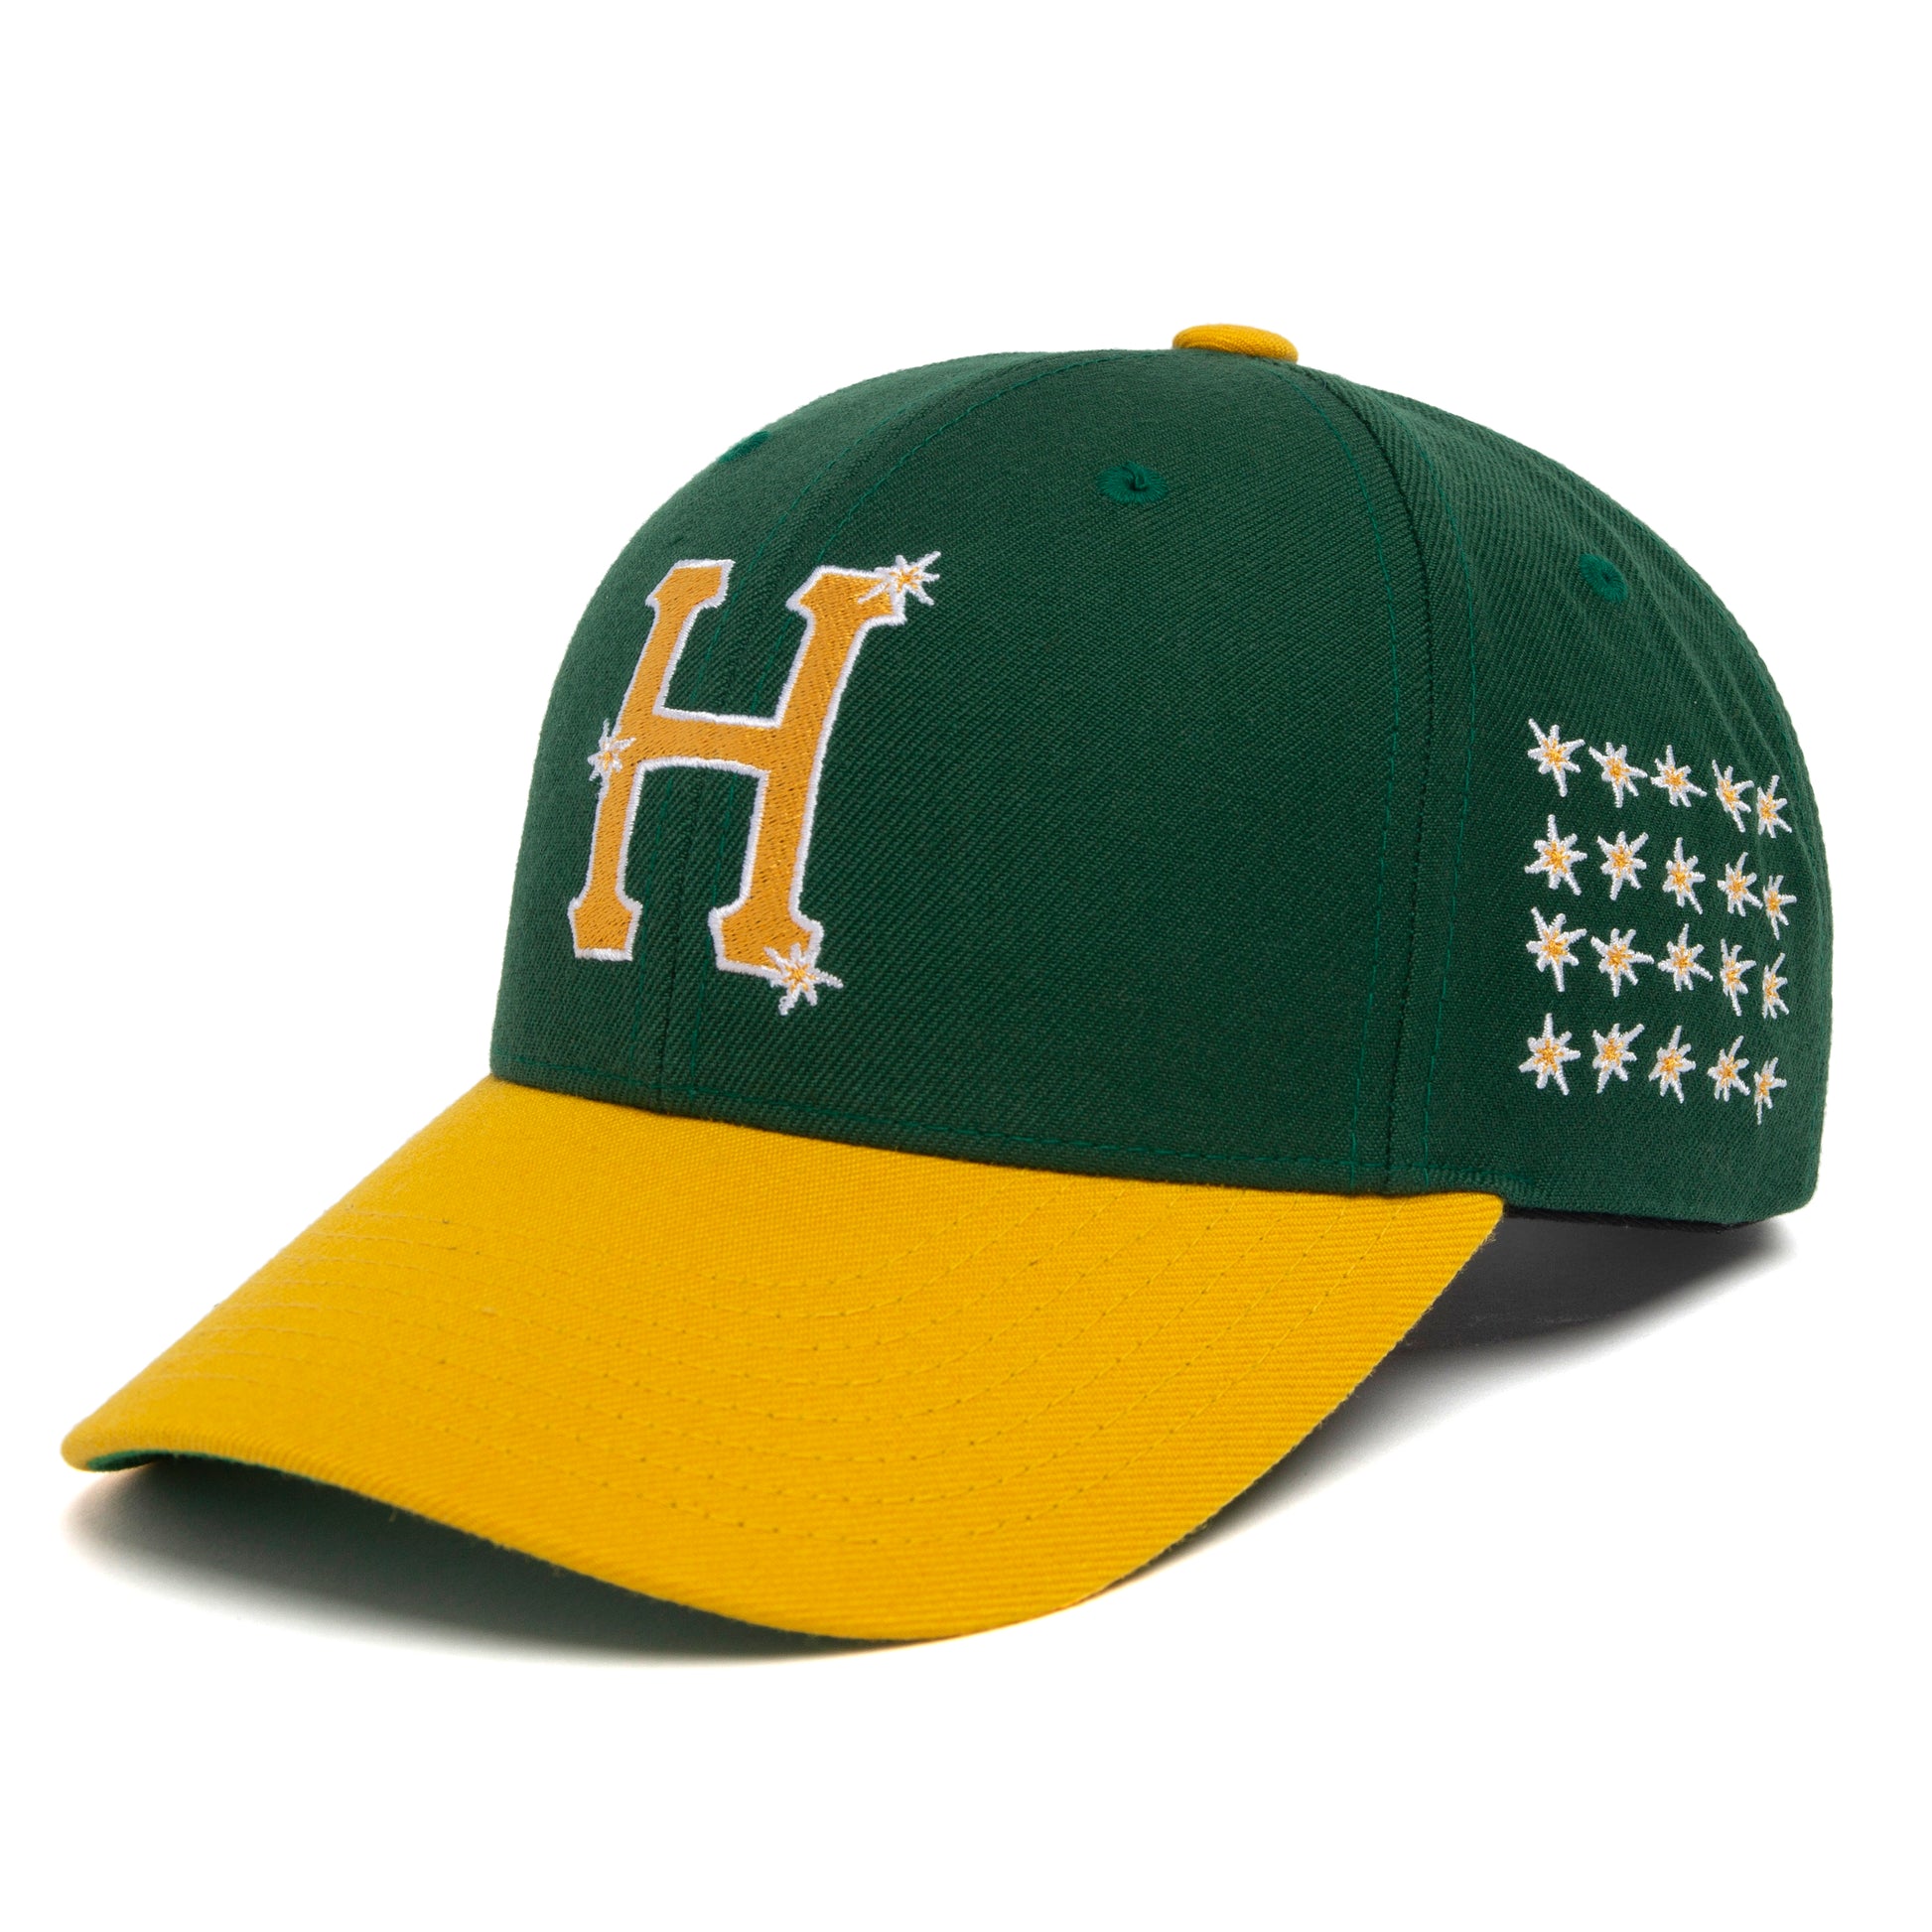 HUF Anniversary 6-Panel Snapback - Green/Yellow - Headz Up 